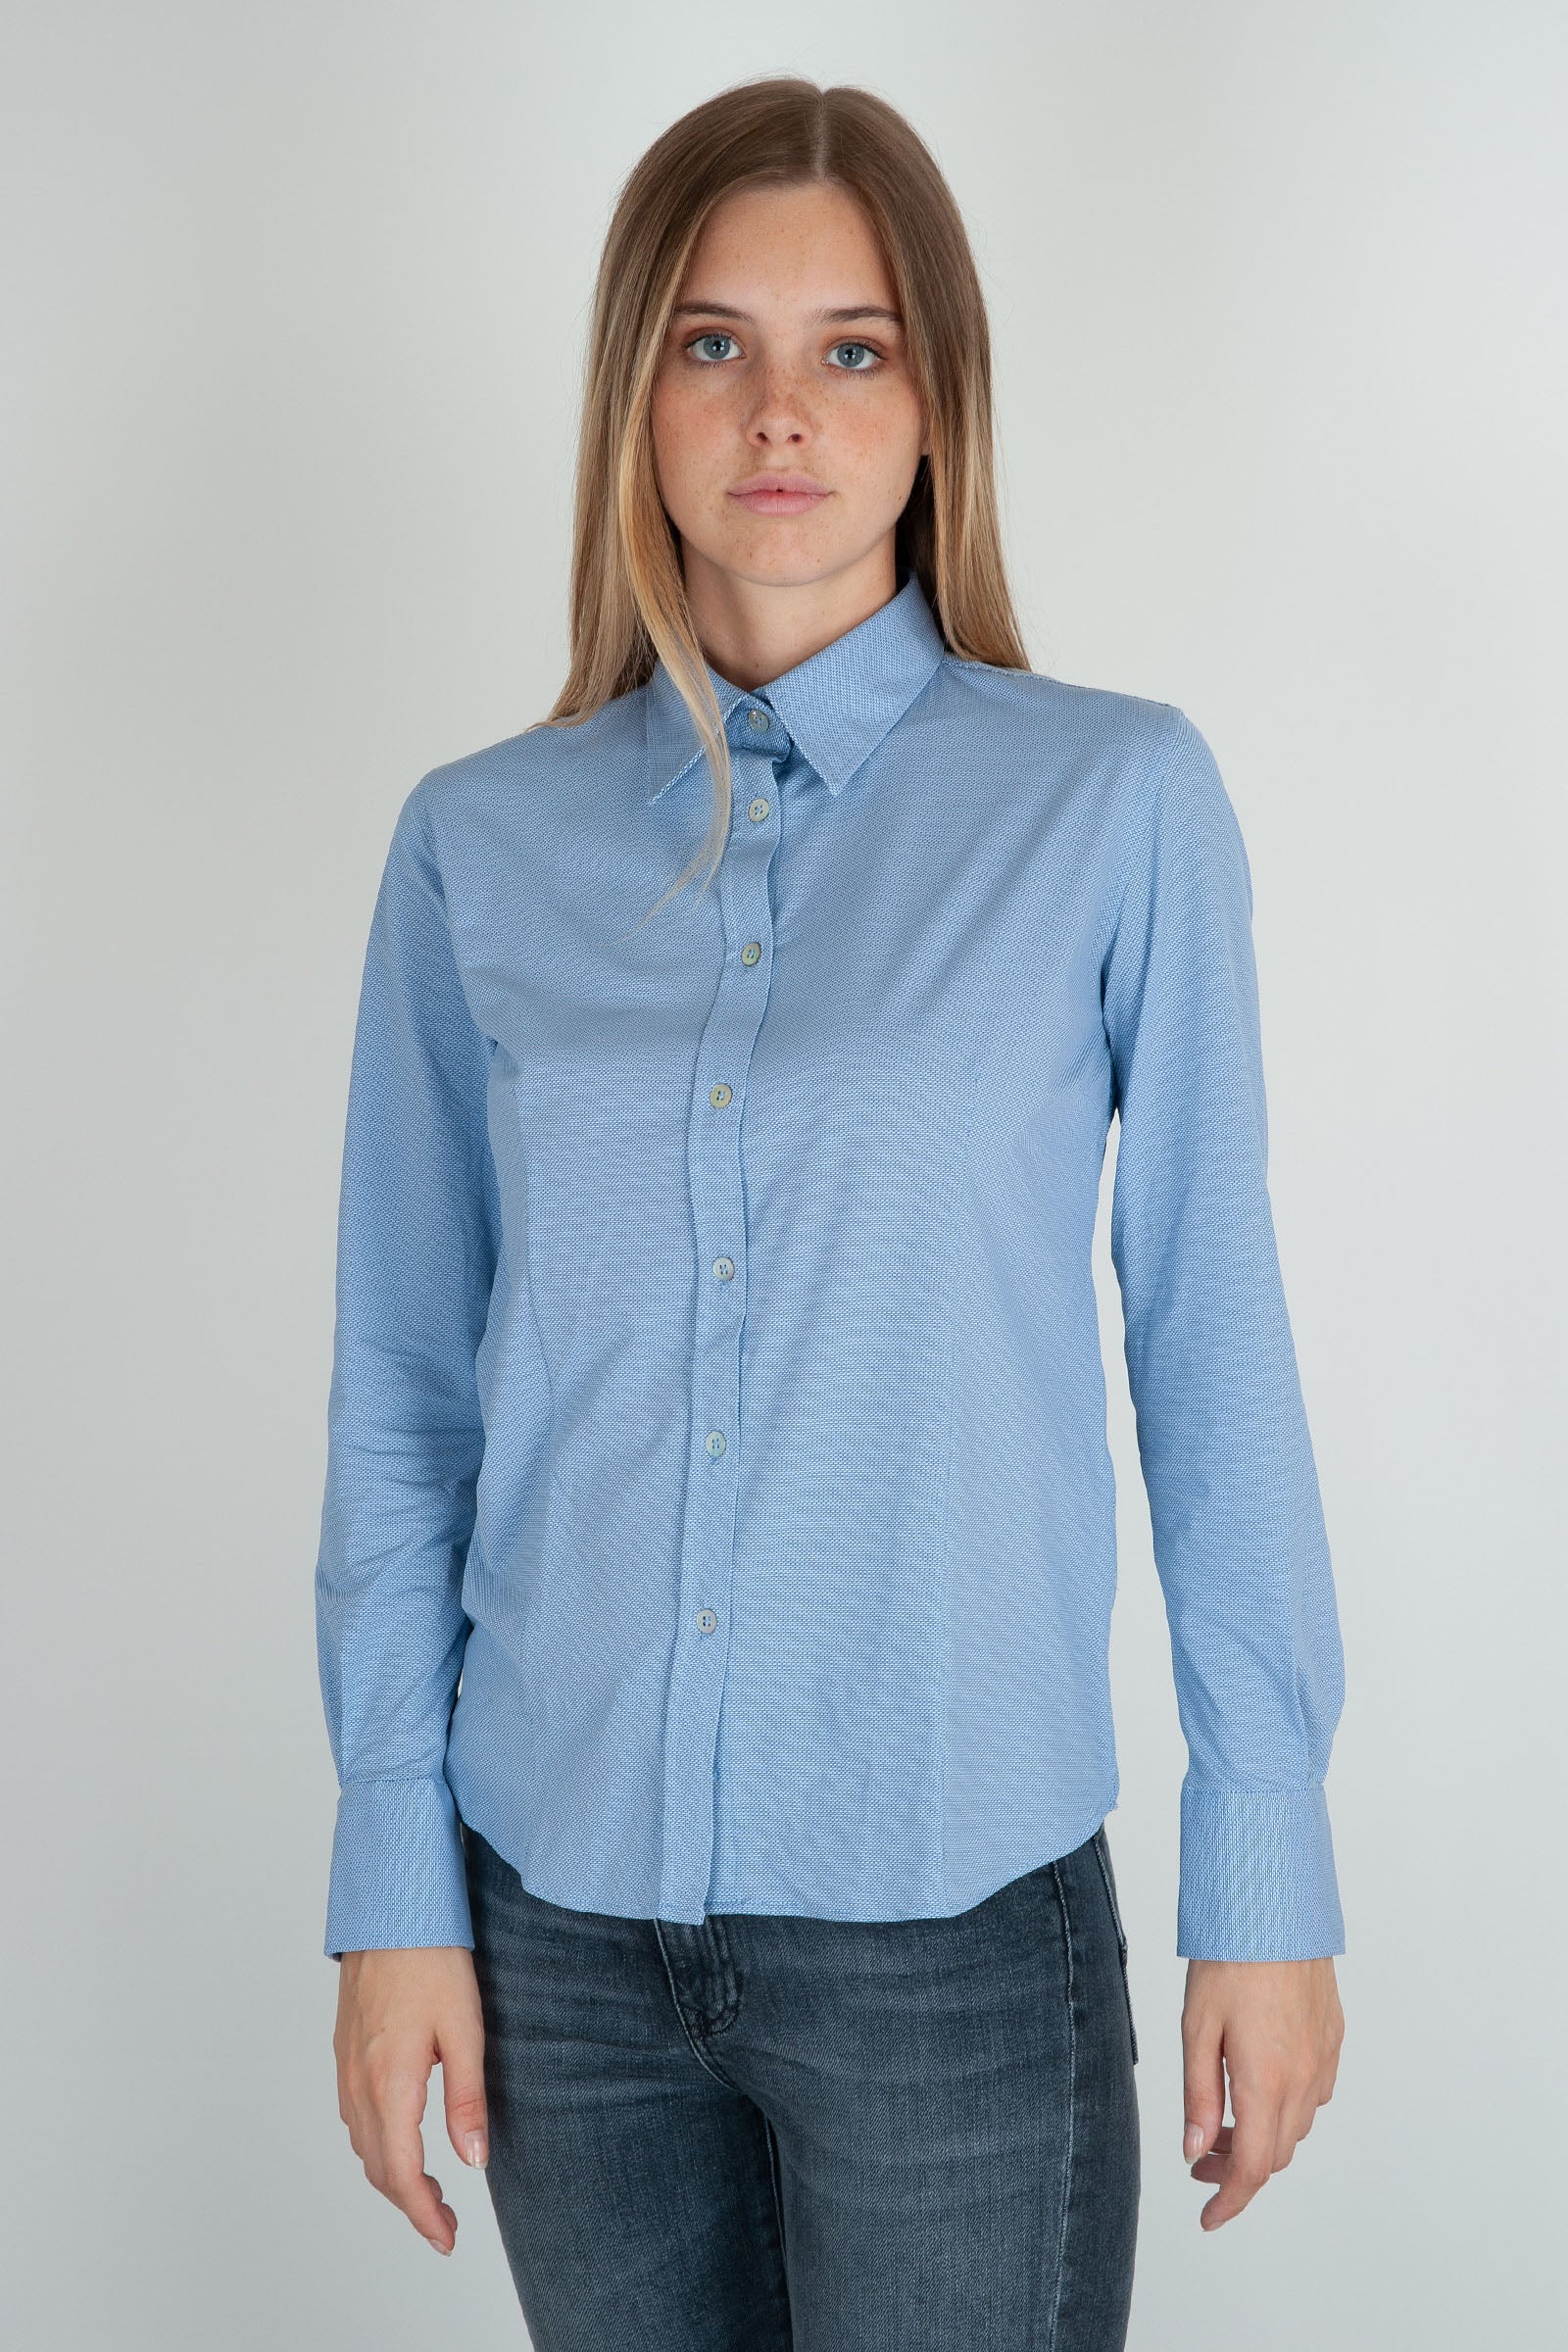 RRD Camicia Oxford Jacquard Blu in Materiale - 5